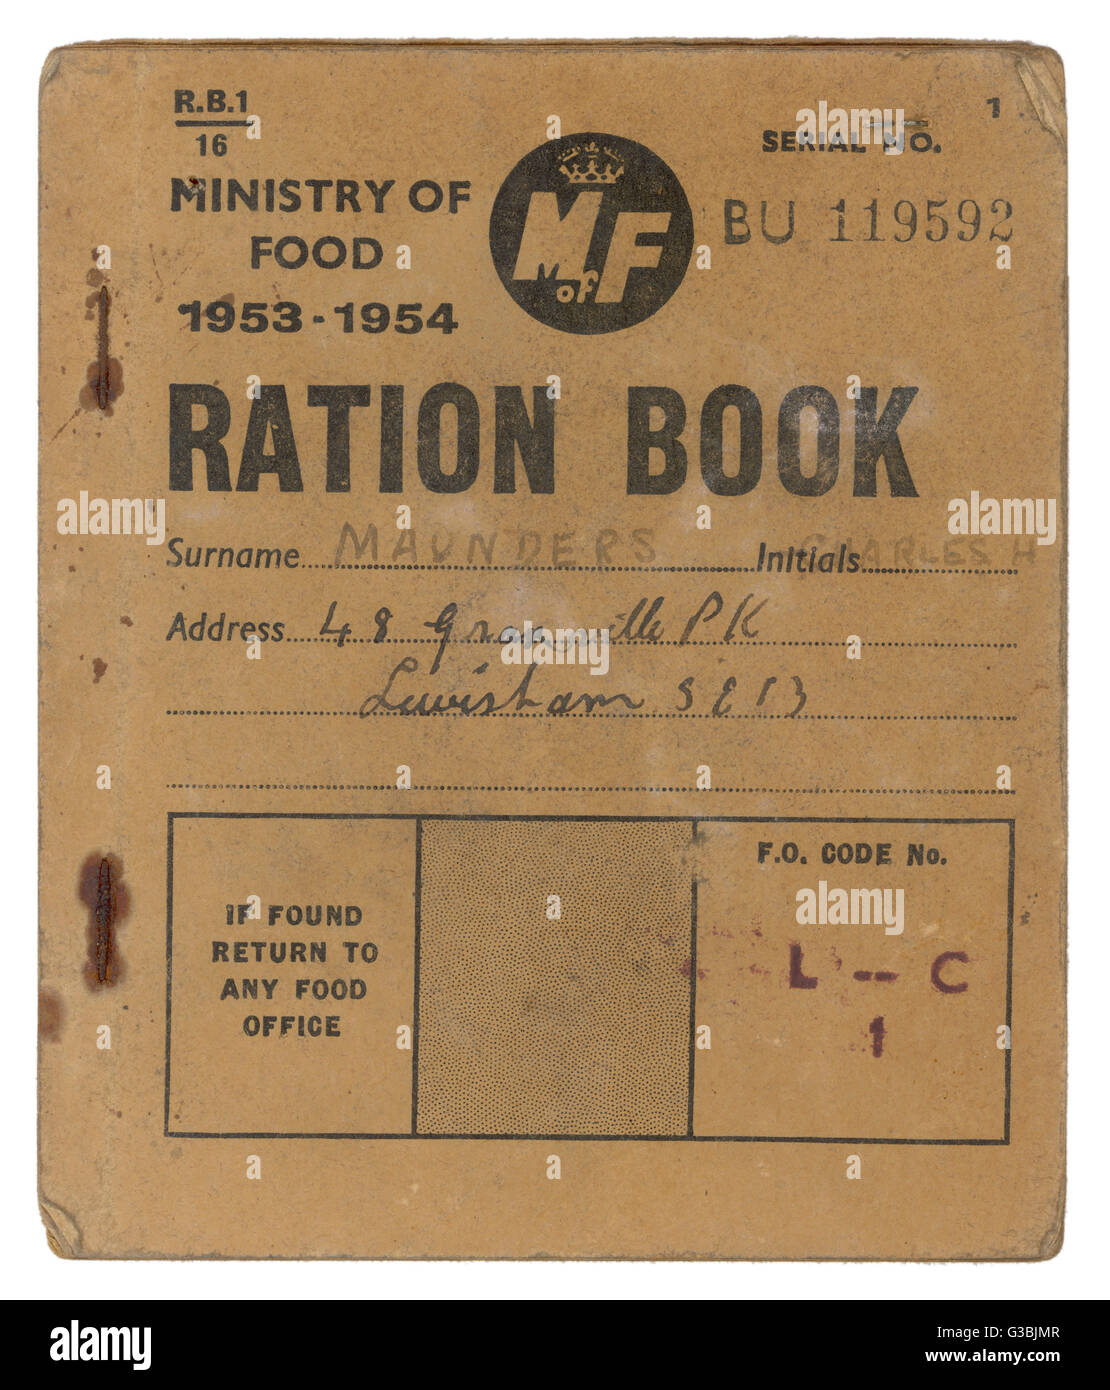 Un Ministère de la ration alimentaire, livre, prouvant que le rationnement a duré en Grande-Bretagne pendant plusieurs années après la Seconde Guerre mondiale a pris fin en 1945. Date : 1953 - 1954 Banque D'Images